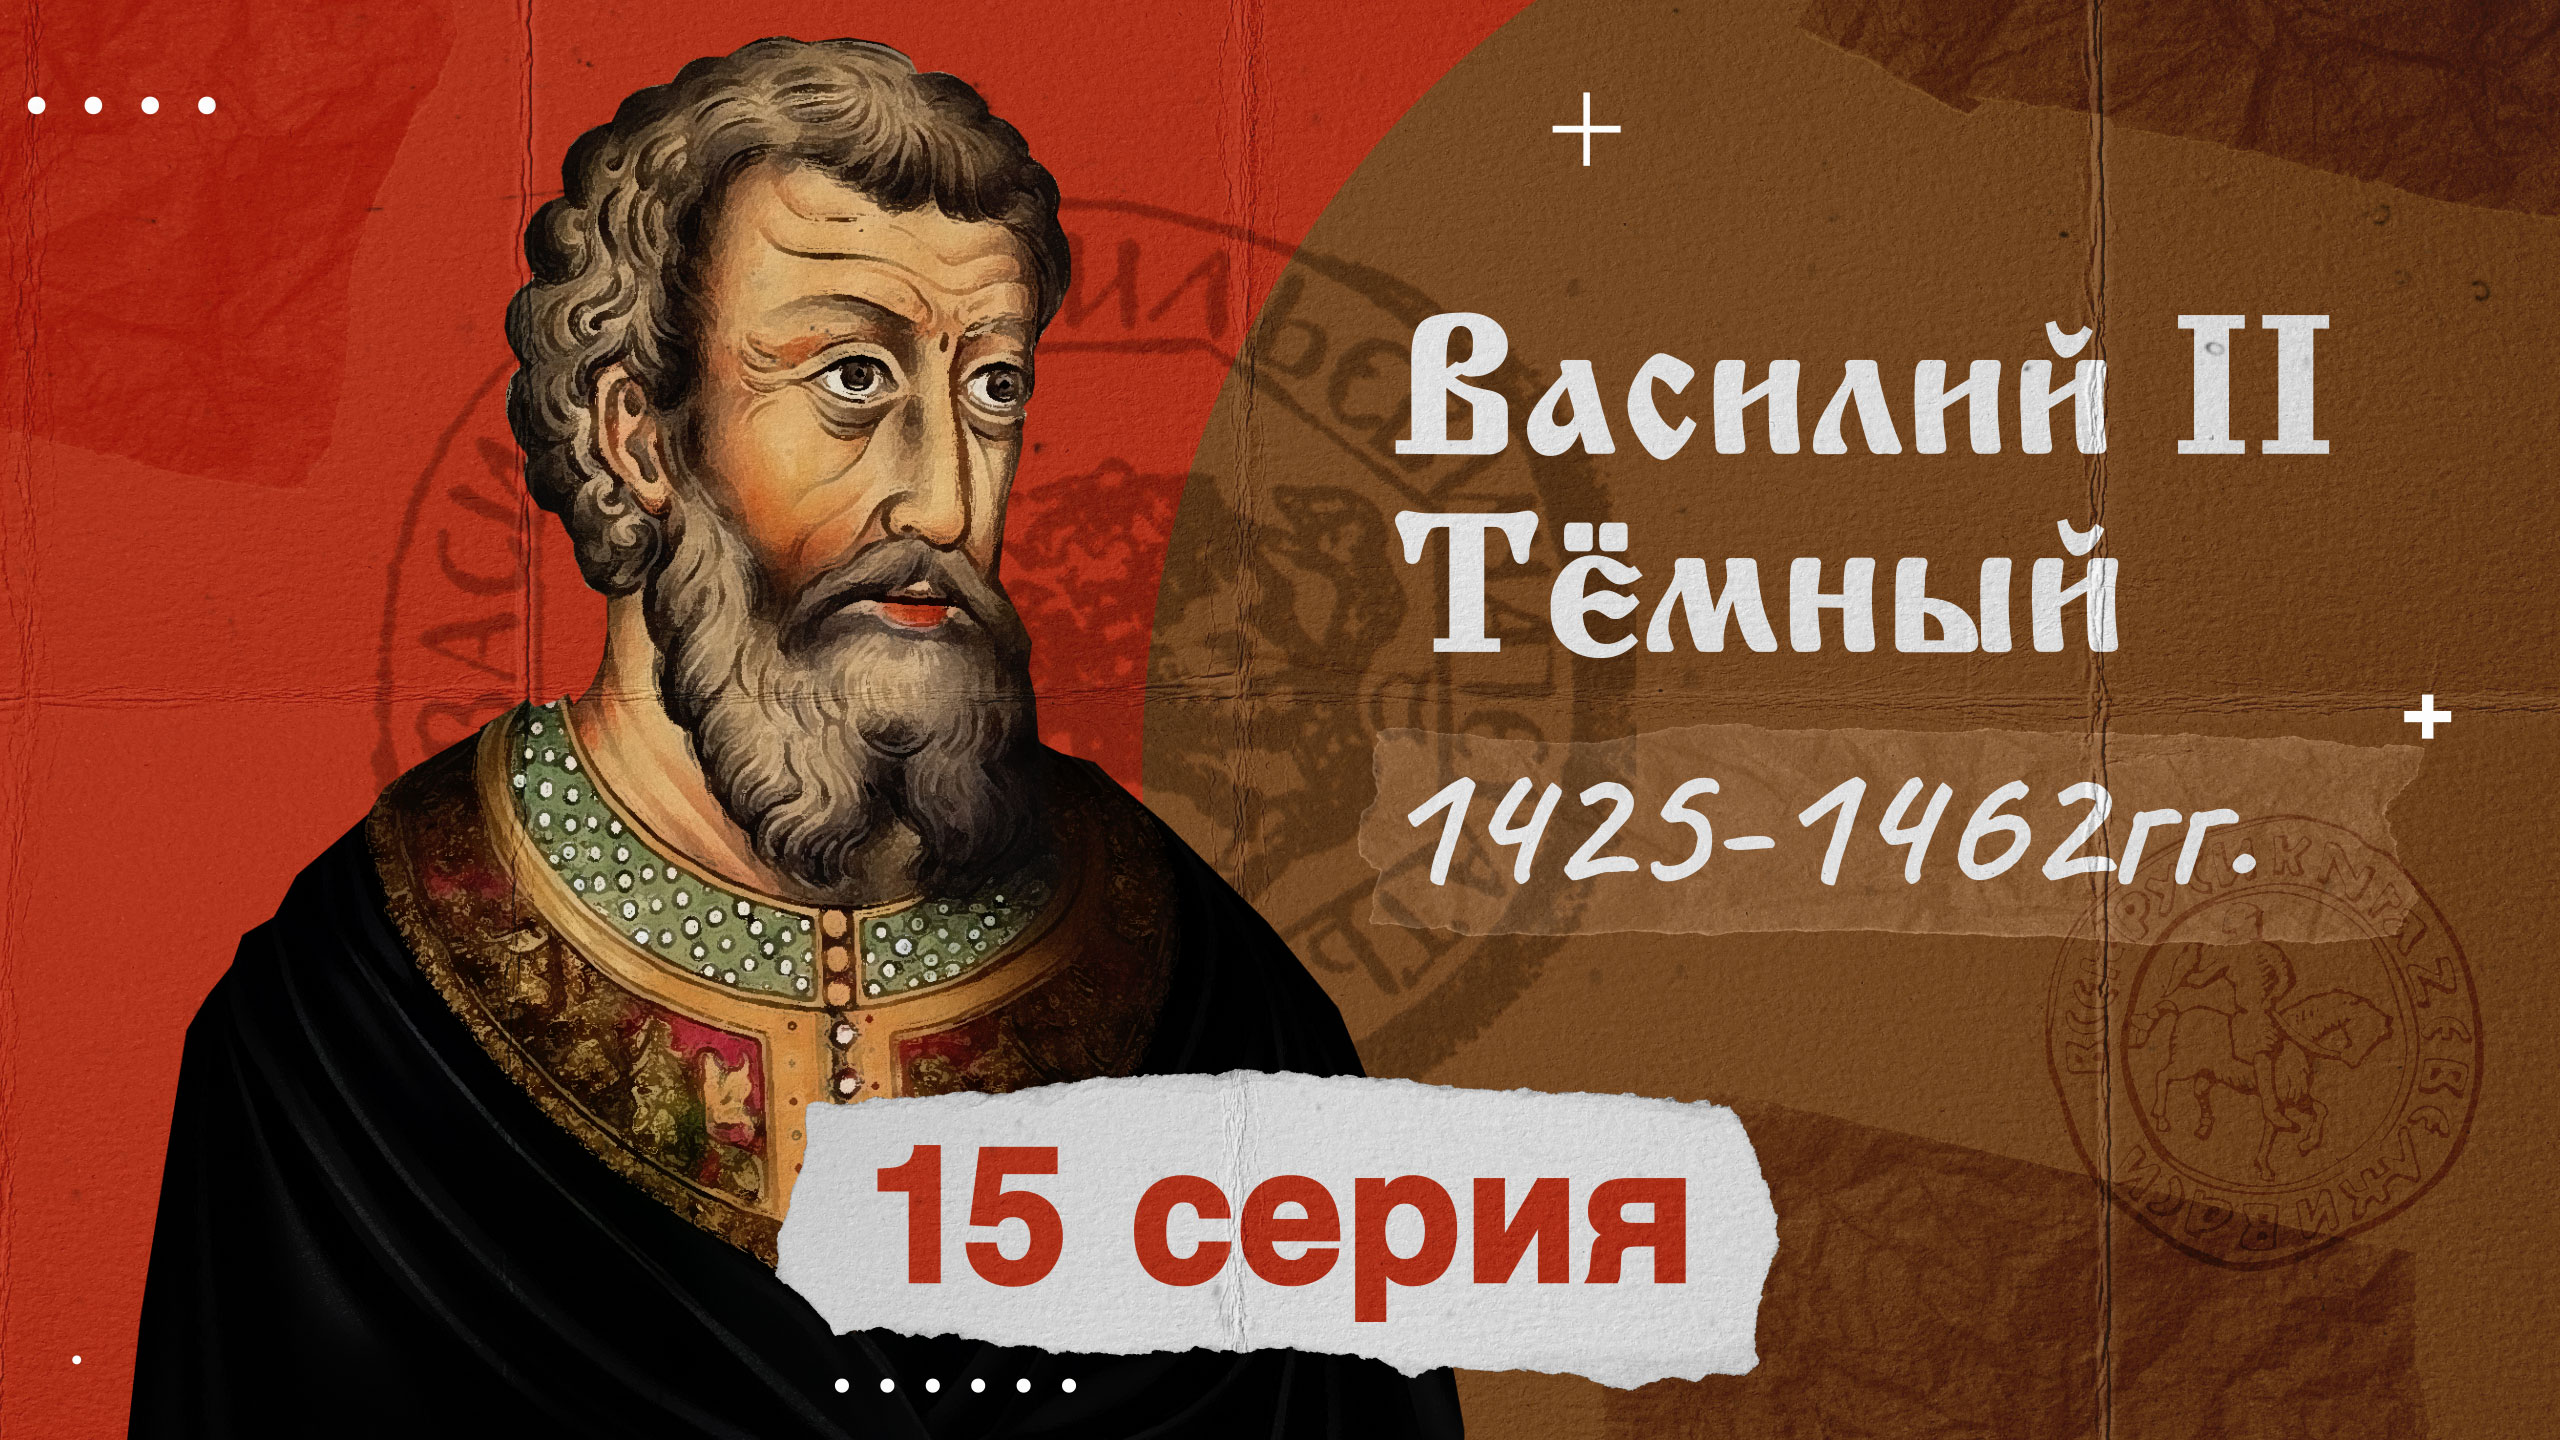 Князь Василий Тёмный - 1425-1462г. История России